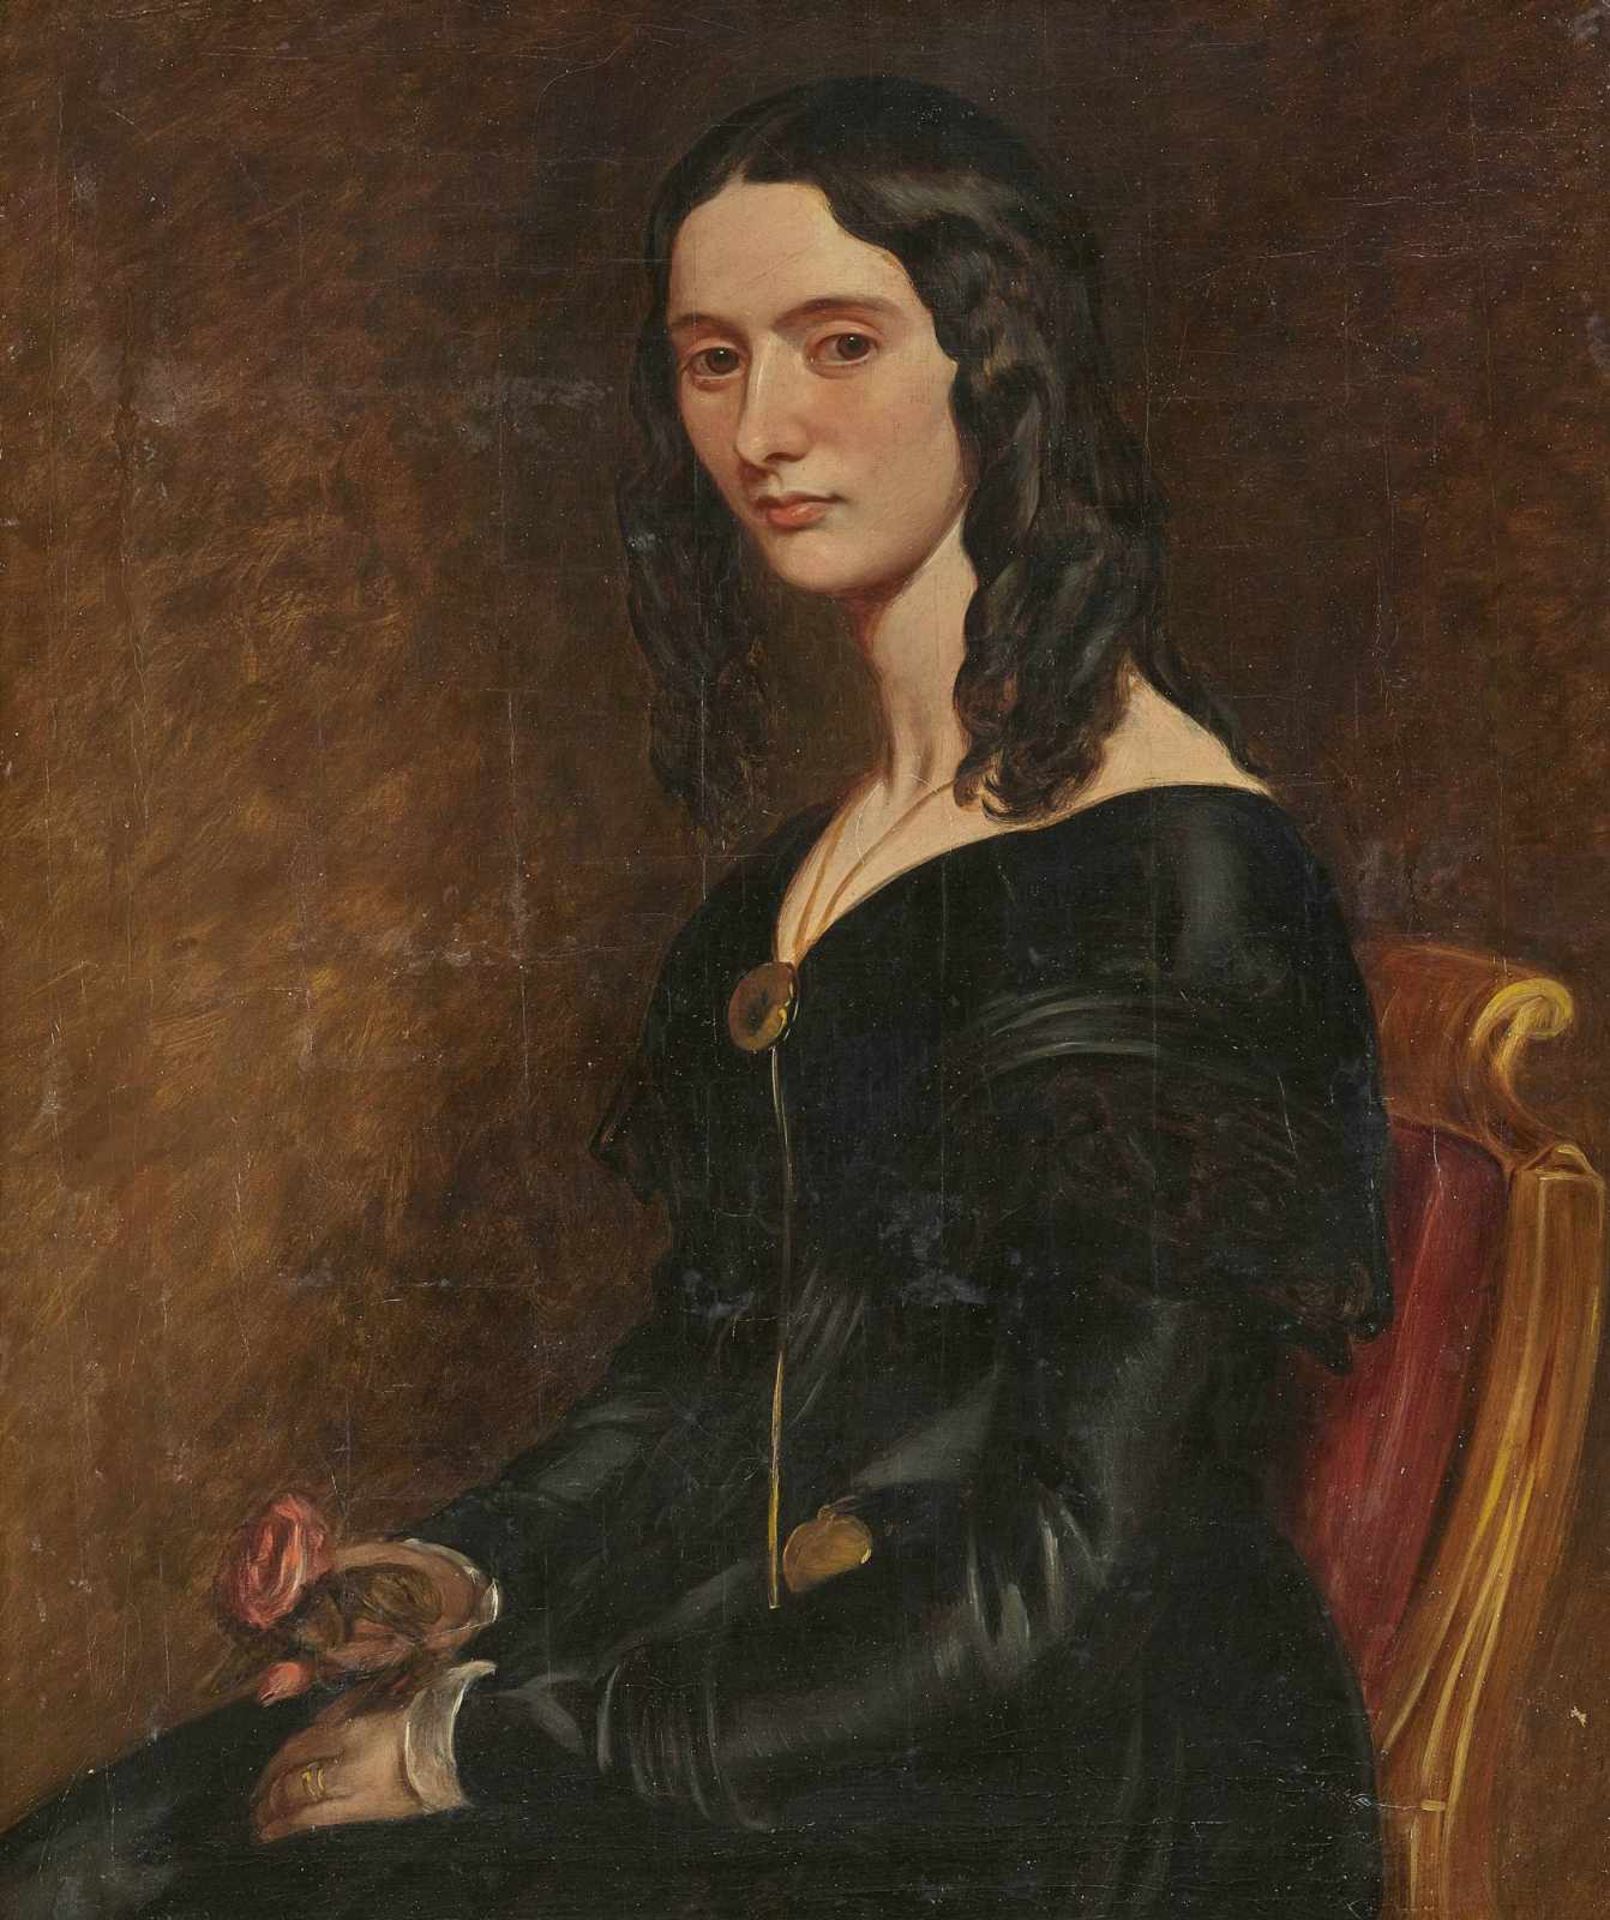 ENGLAND um 1840 Dame in schwarzem Kleid Halbfigur nach links sitzend. Öl auf Lwd. 91 x 71 cm.